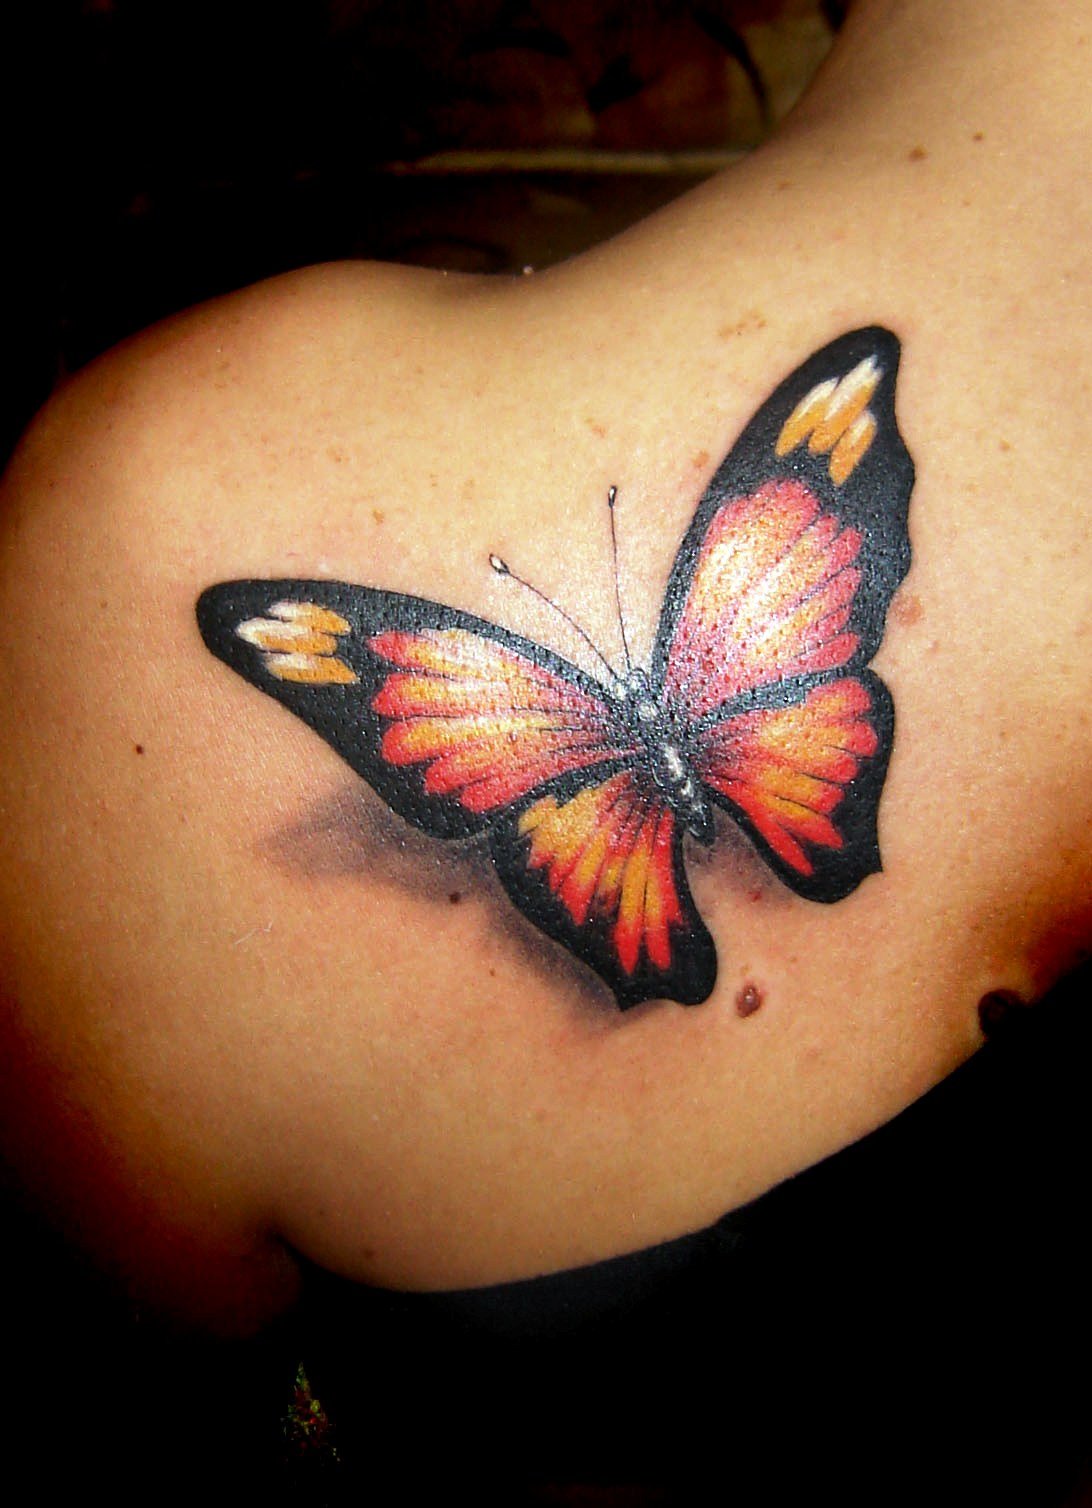 3-butterfly tattoo ideas